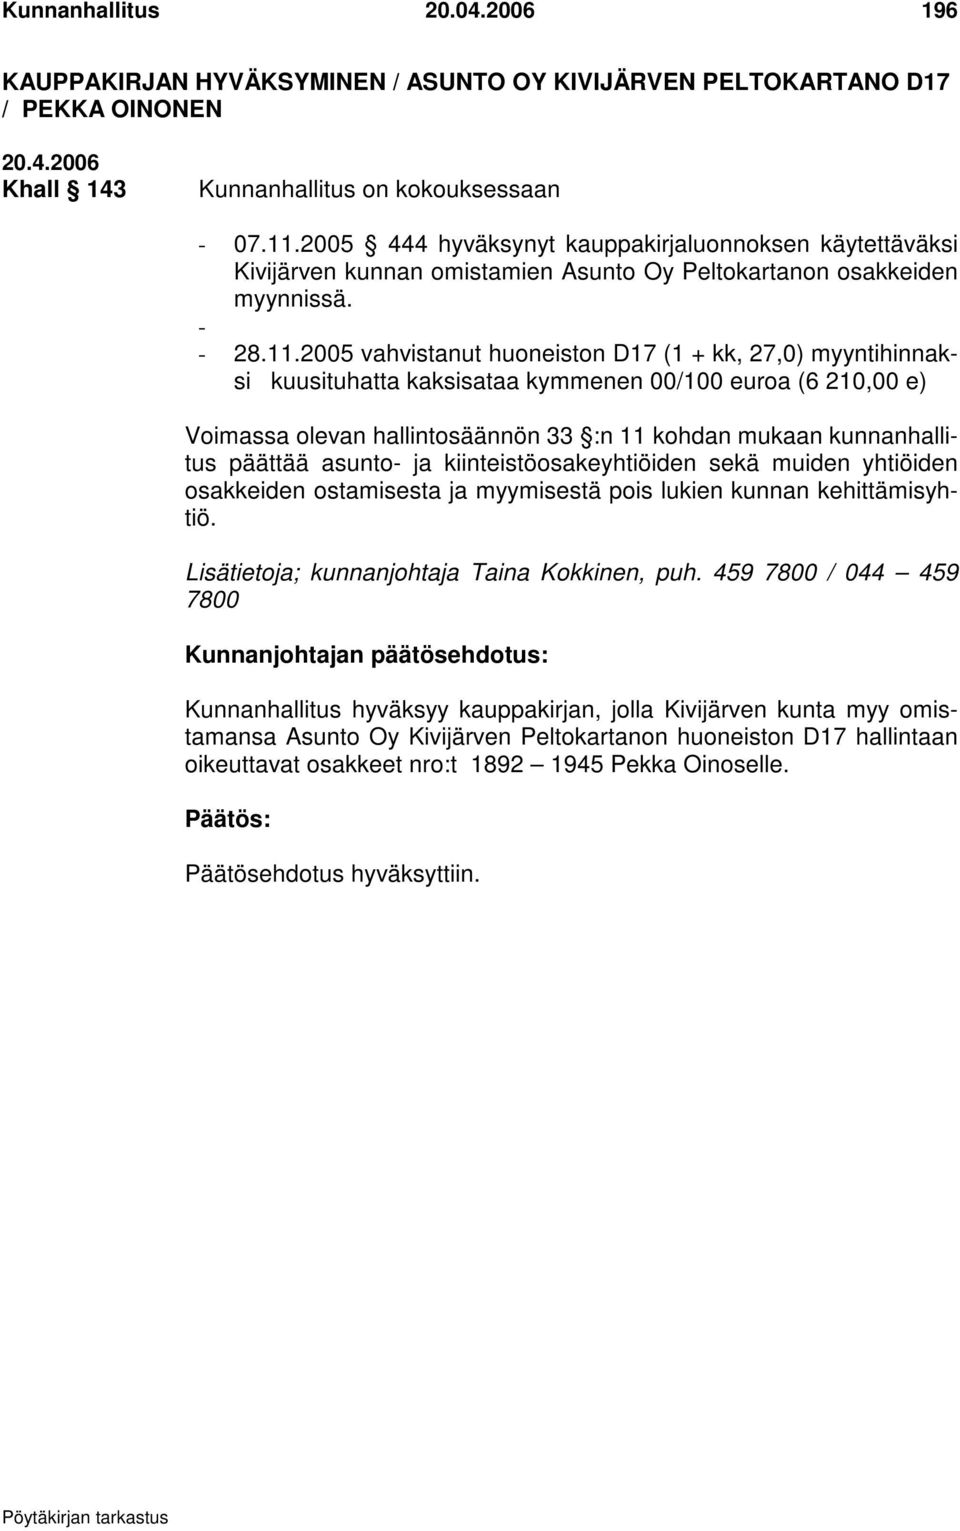 2005 vahvistanut huoneiston D17 (1 + kk, 27,0) myyntihinnaksi kuusituhatta kaksisataa kymmenen 00/100 euroa (6 210,00 e) Voimassa olevan hallintosäännön 33 :n 11 kohdan mukaan kunnanhallitus päättää